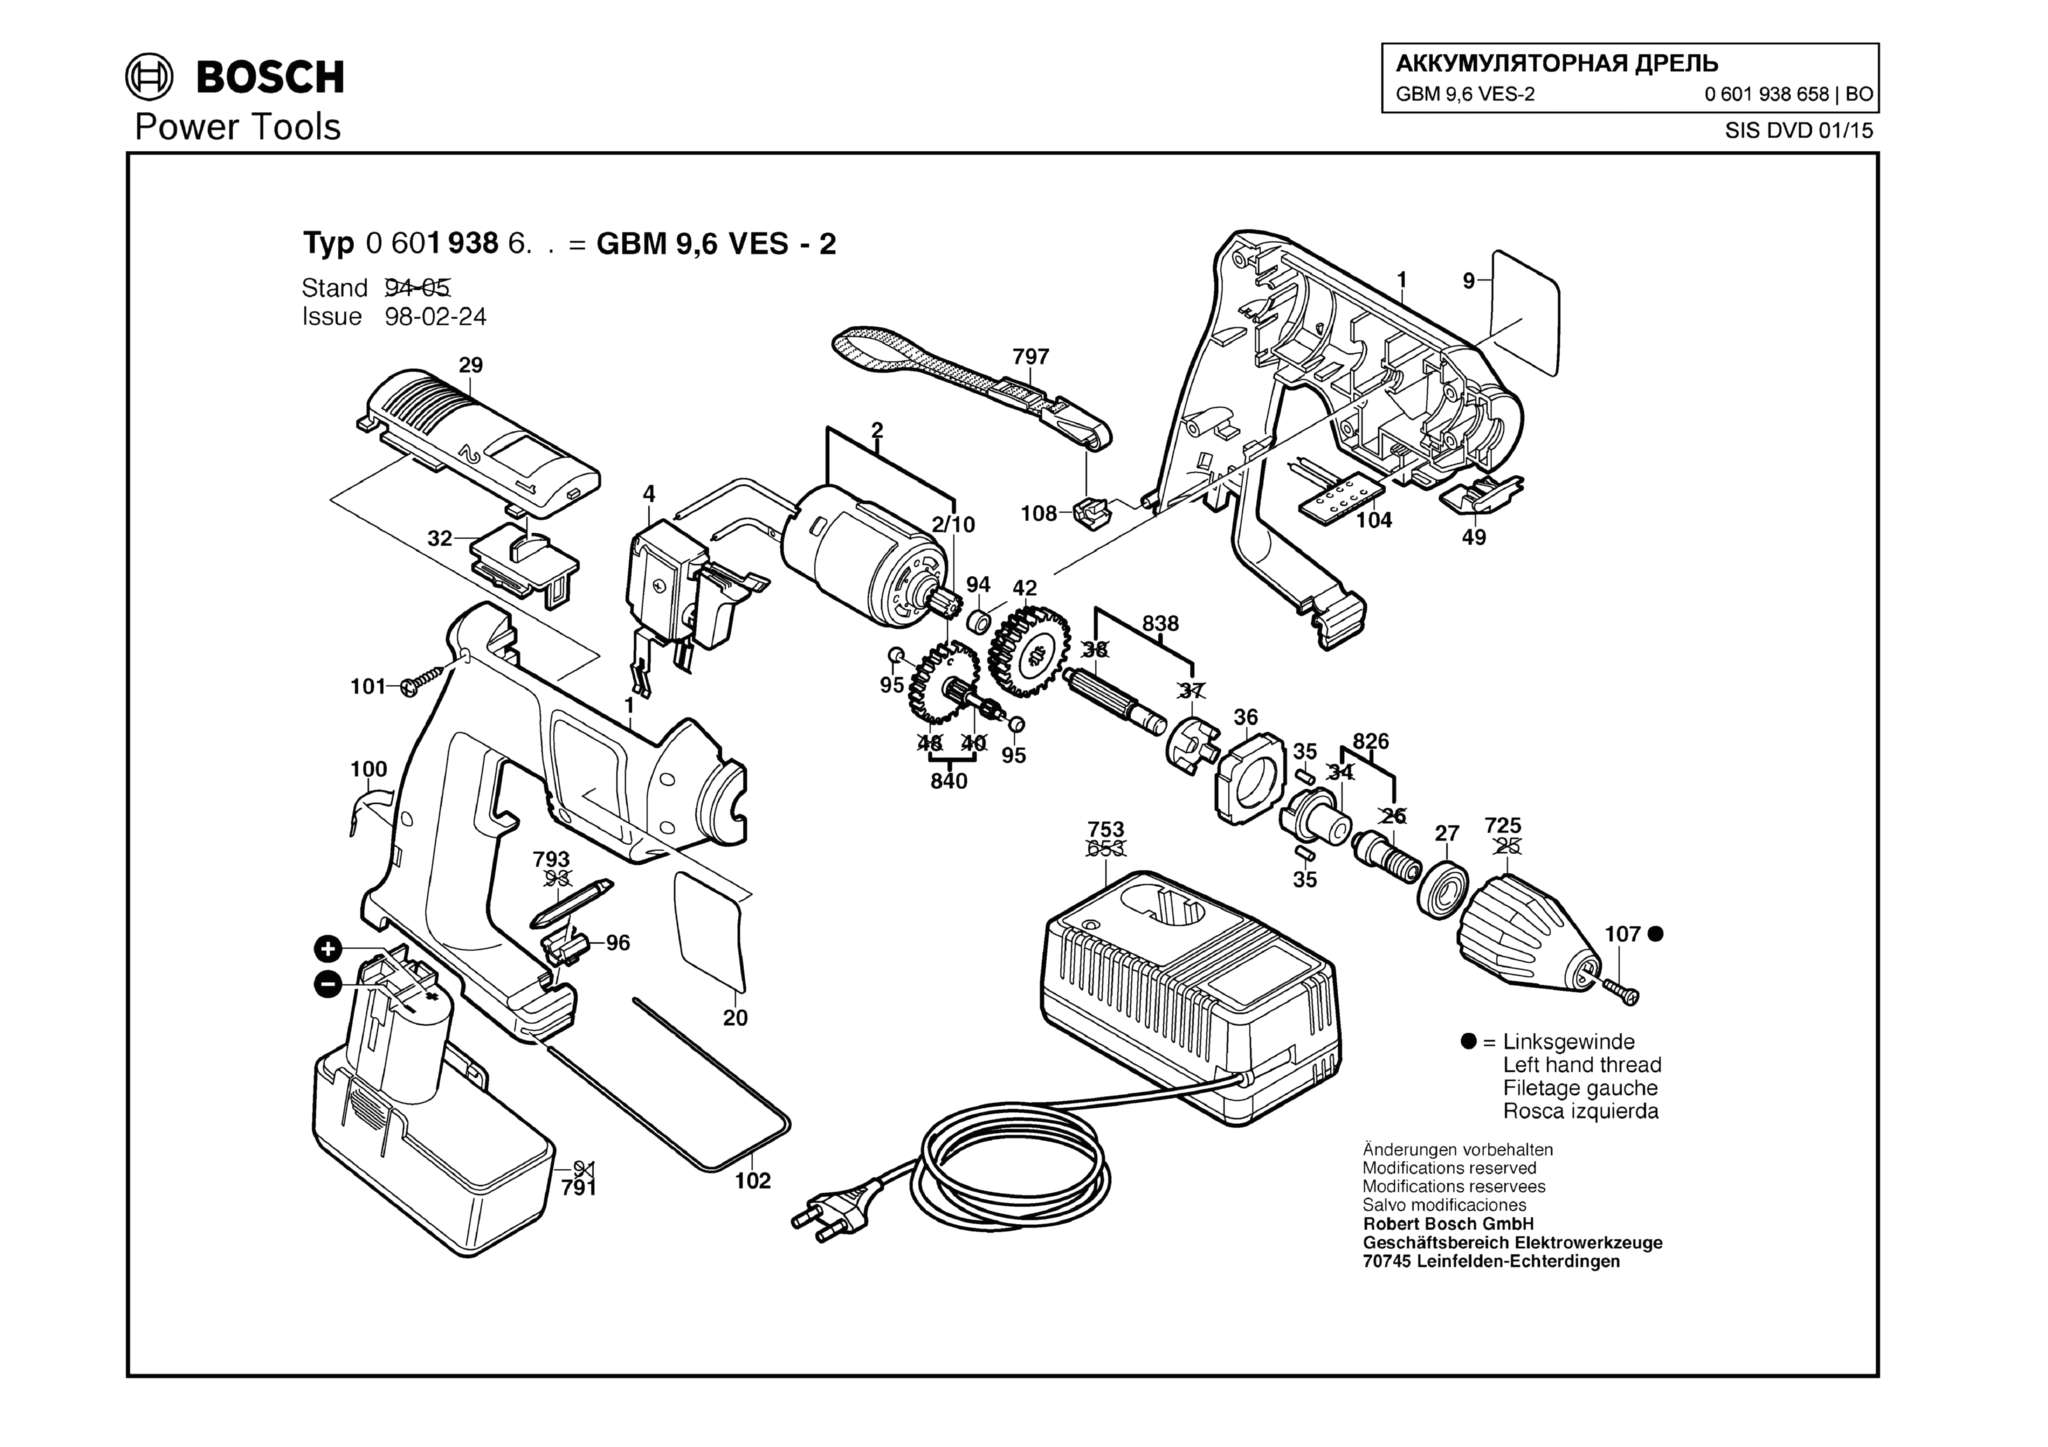 Запчасти, схема и деталировка Bosch GBM 9,6 VES-2 (ТИП 0601938658)